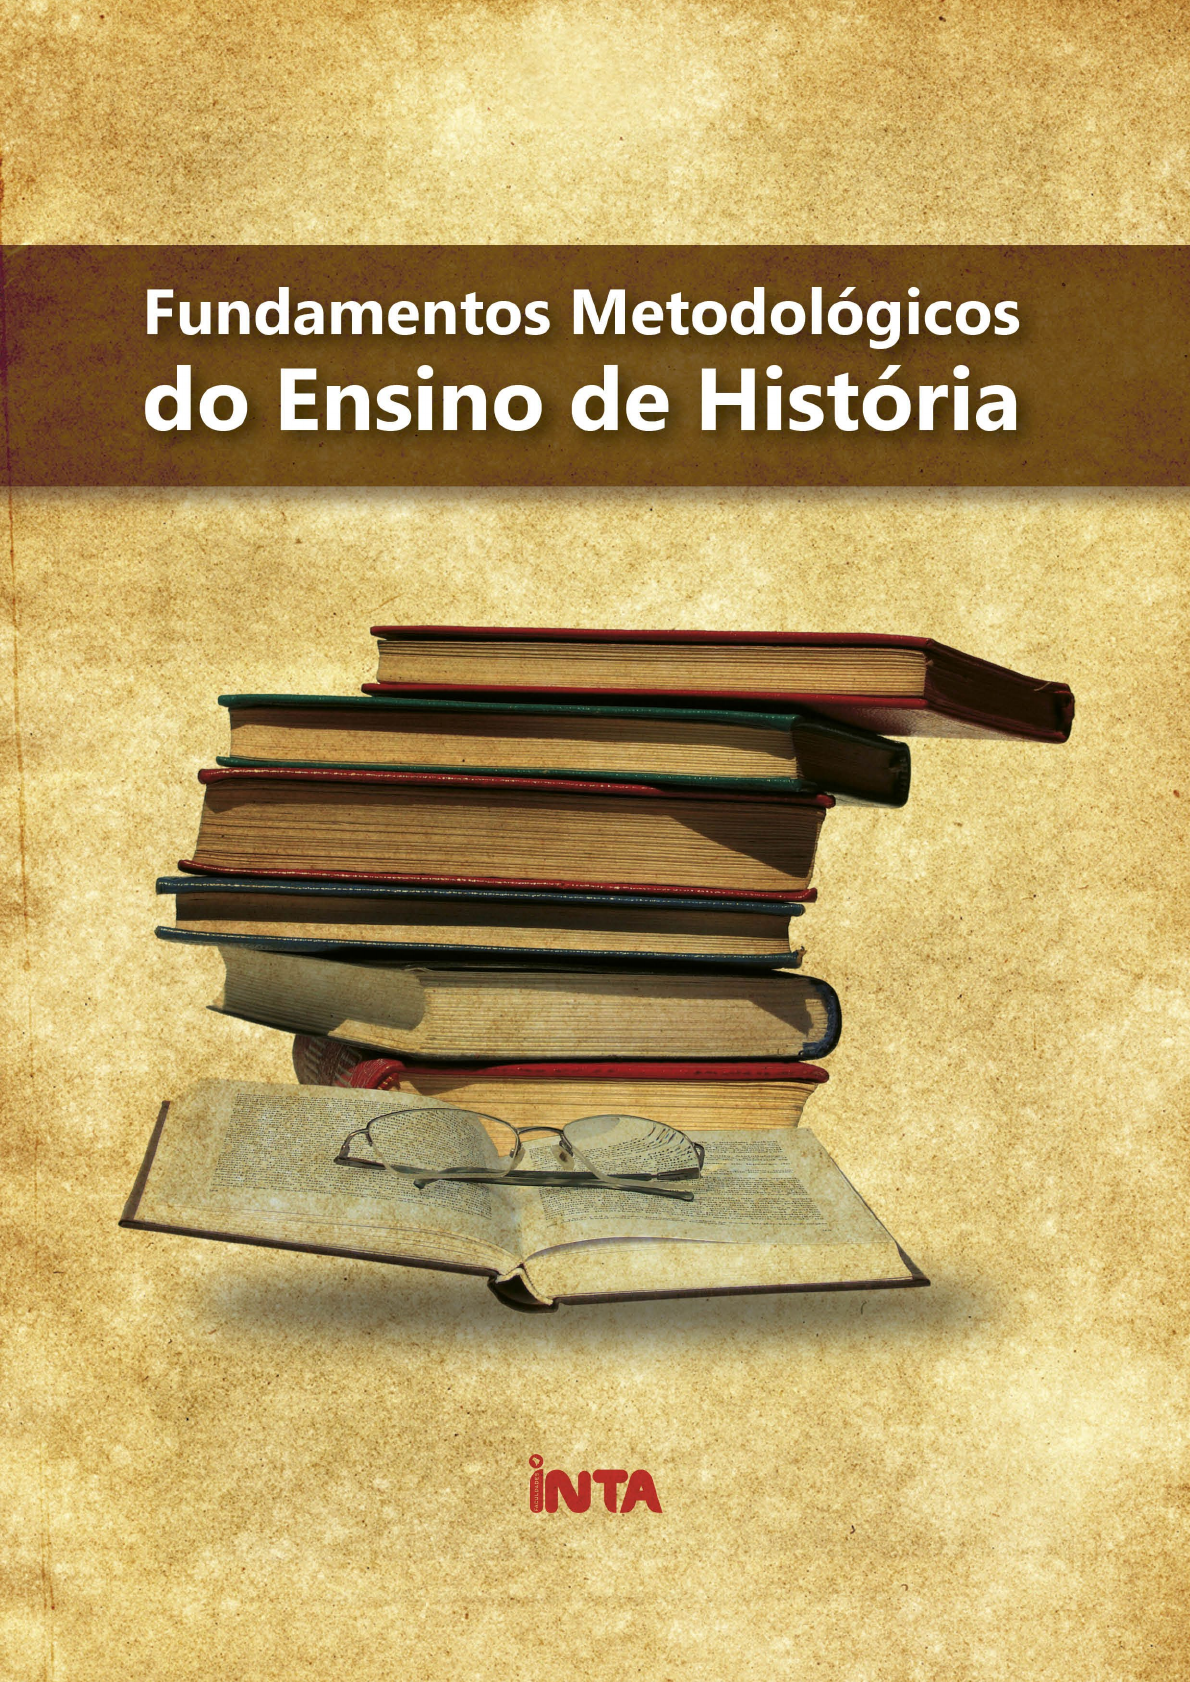 Historia Na Sala de Aula (Introduão) - Leandro Karnal, PDF, Pedagogia